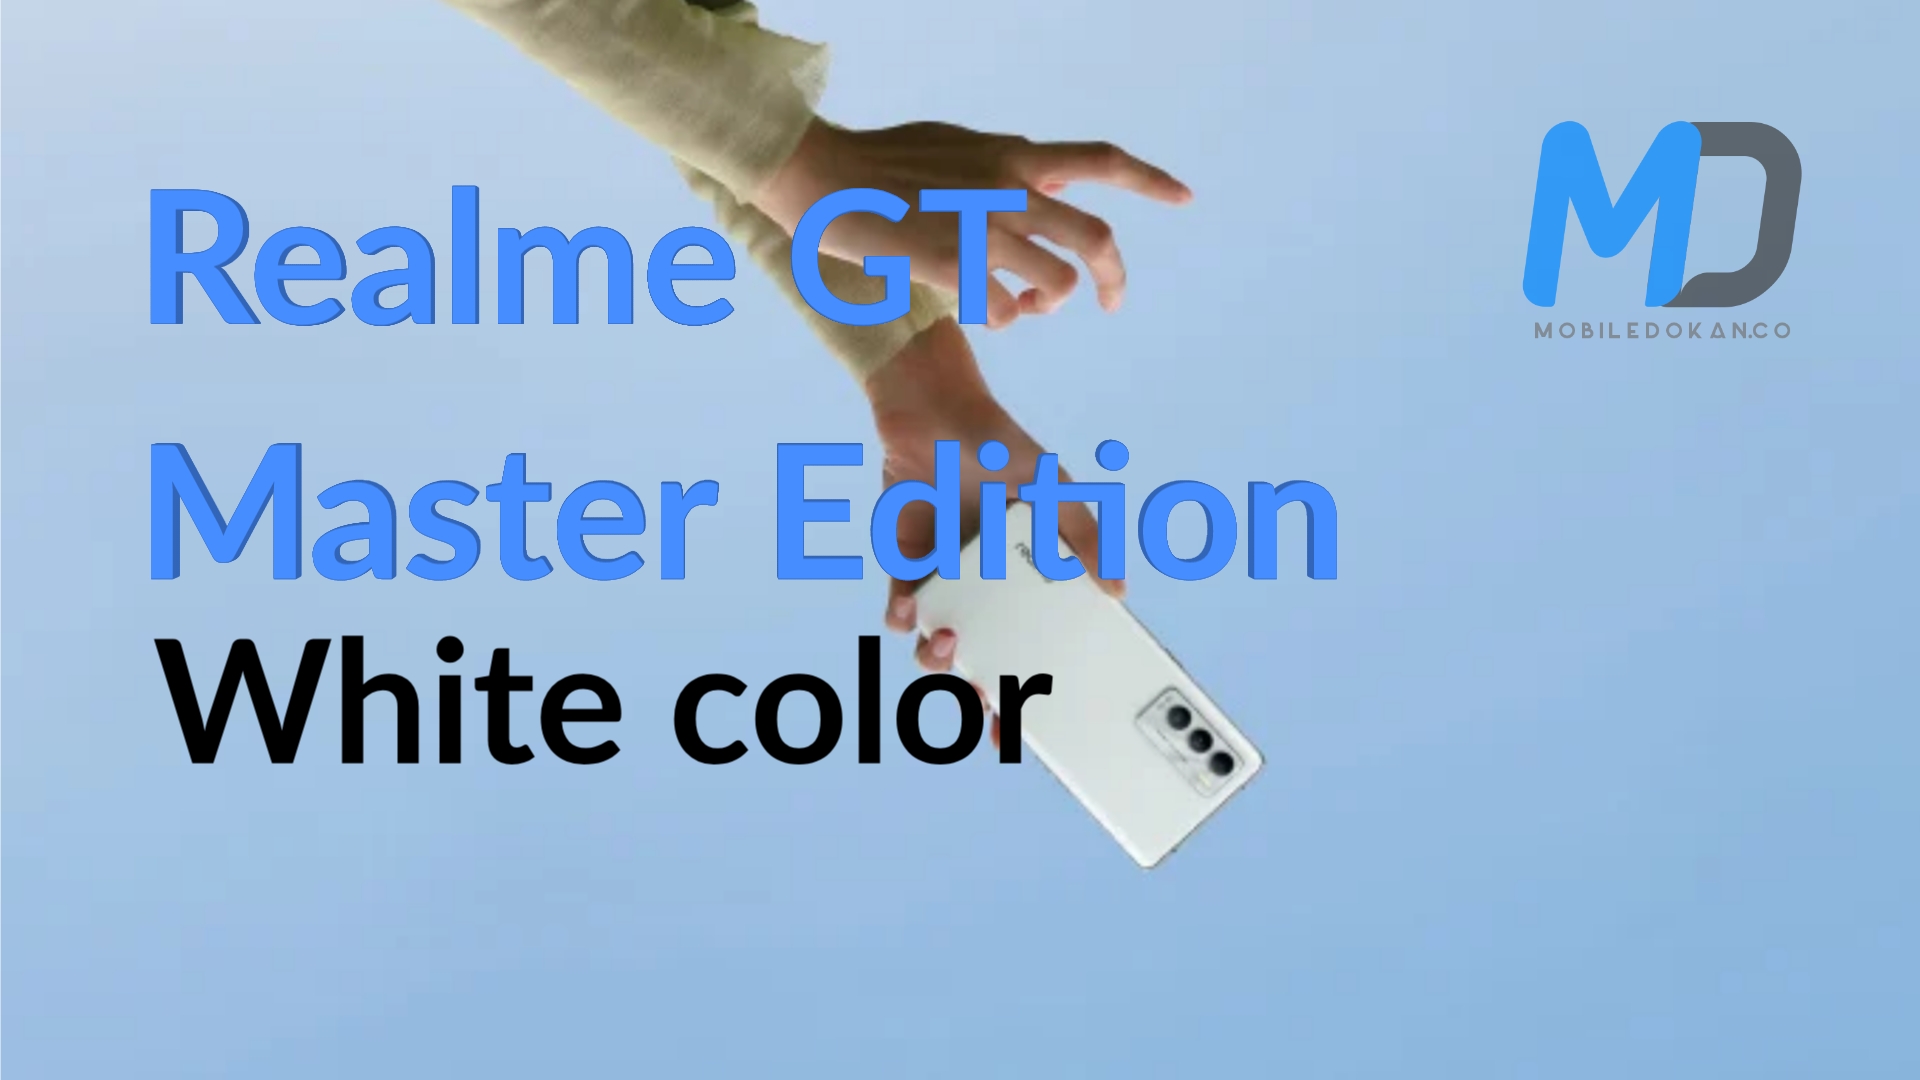 Realme GT Master Edition White color